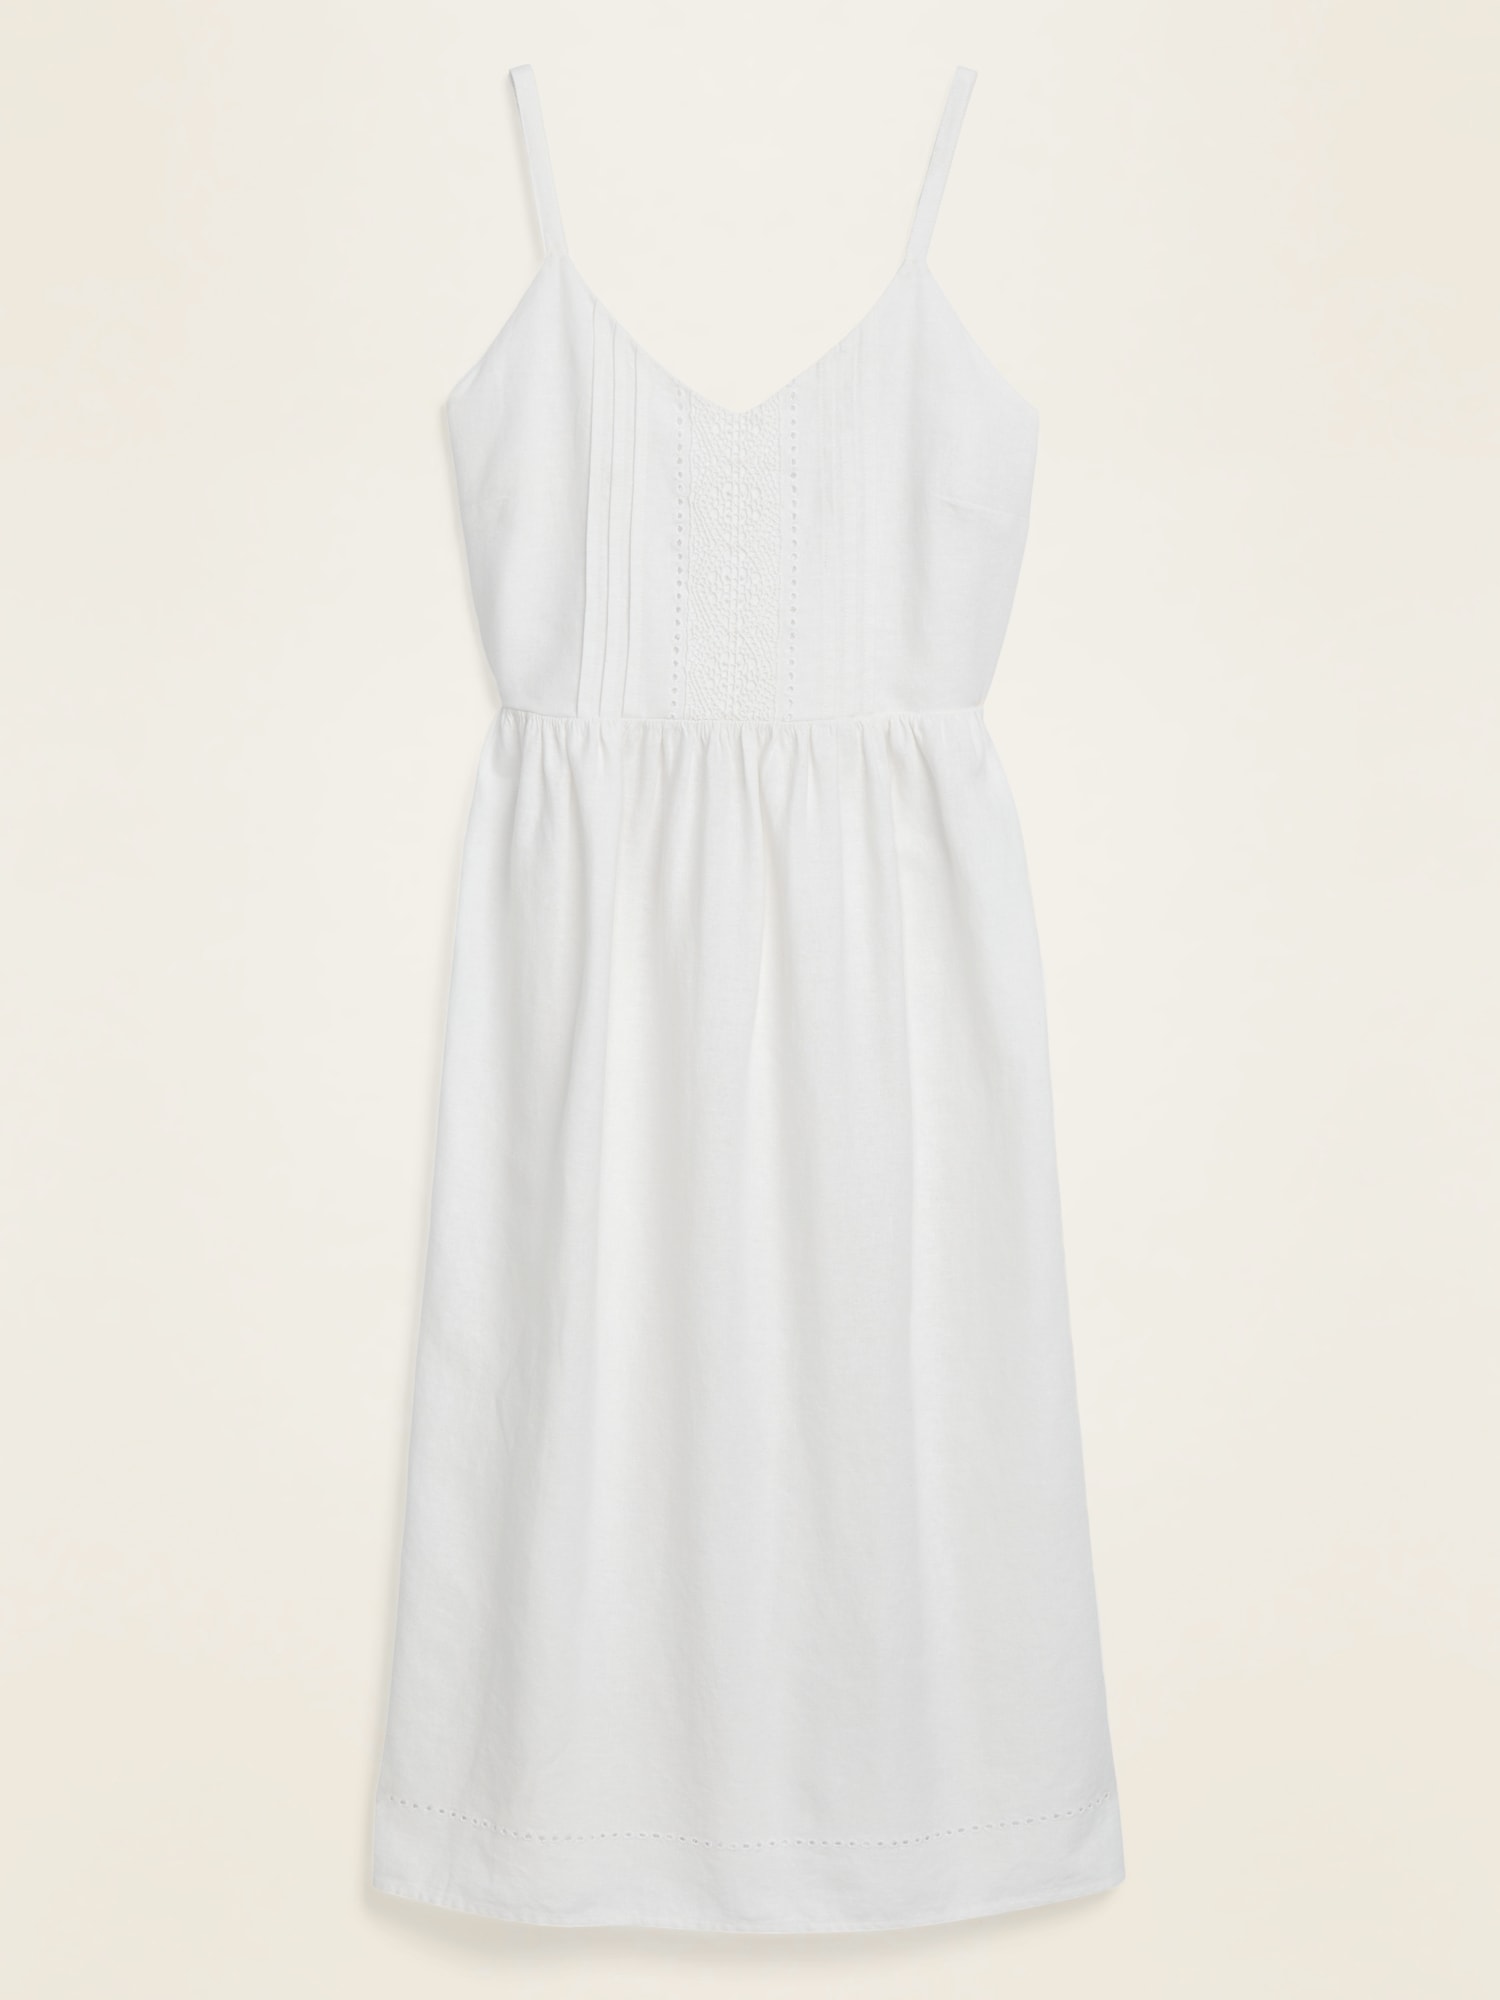 white linen spaghetti strap dress